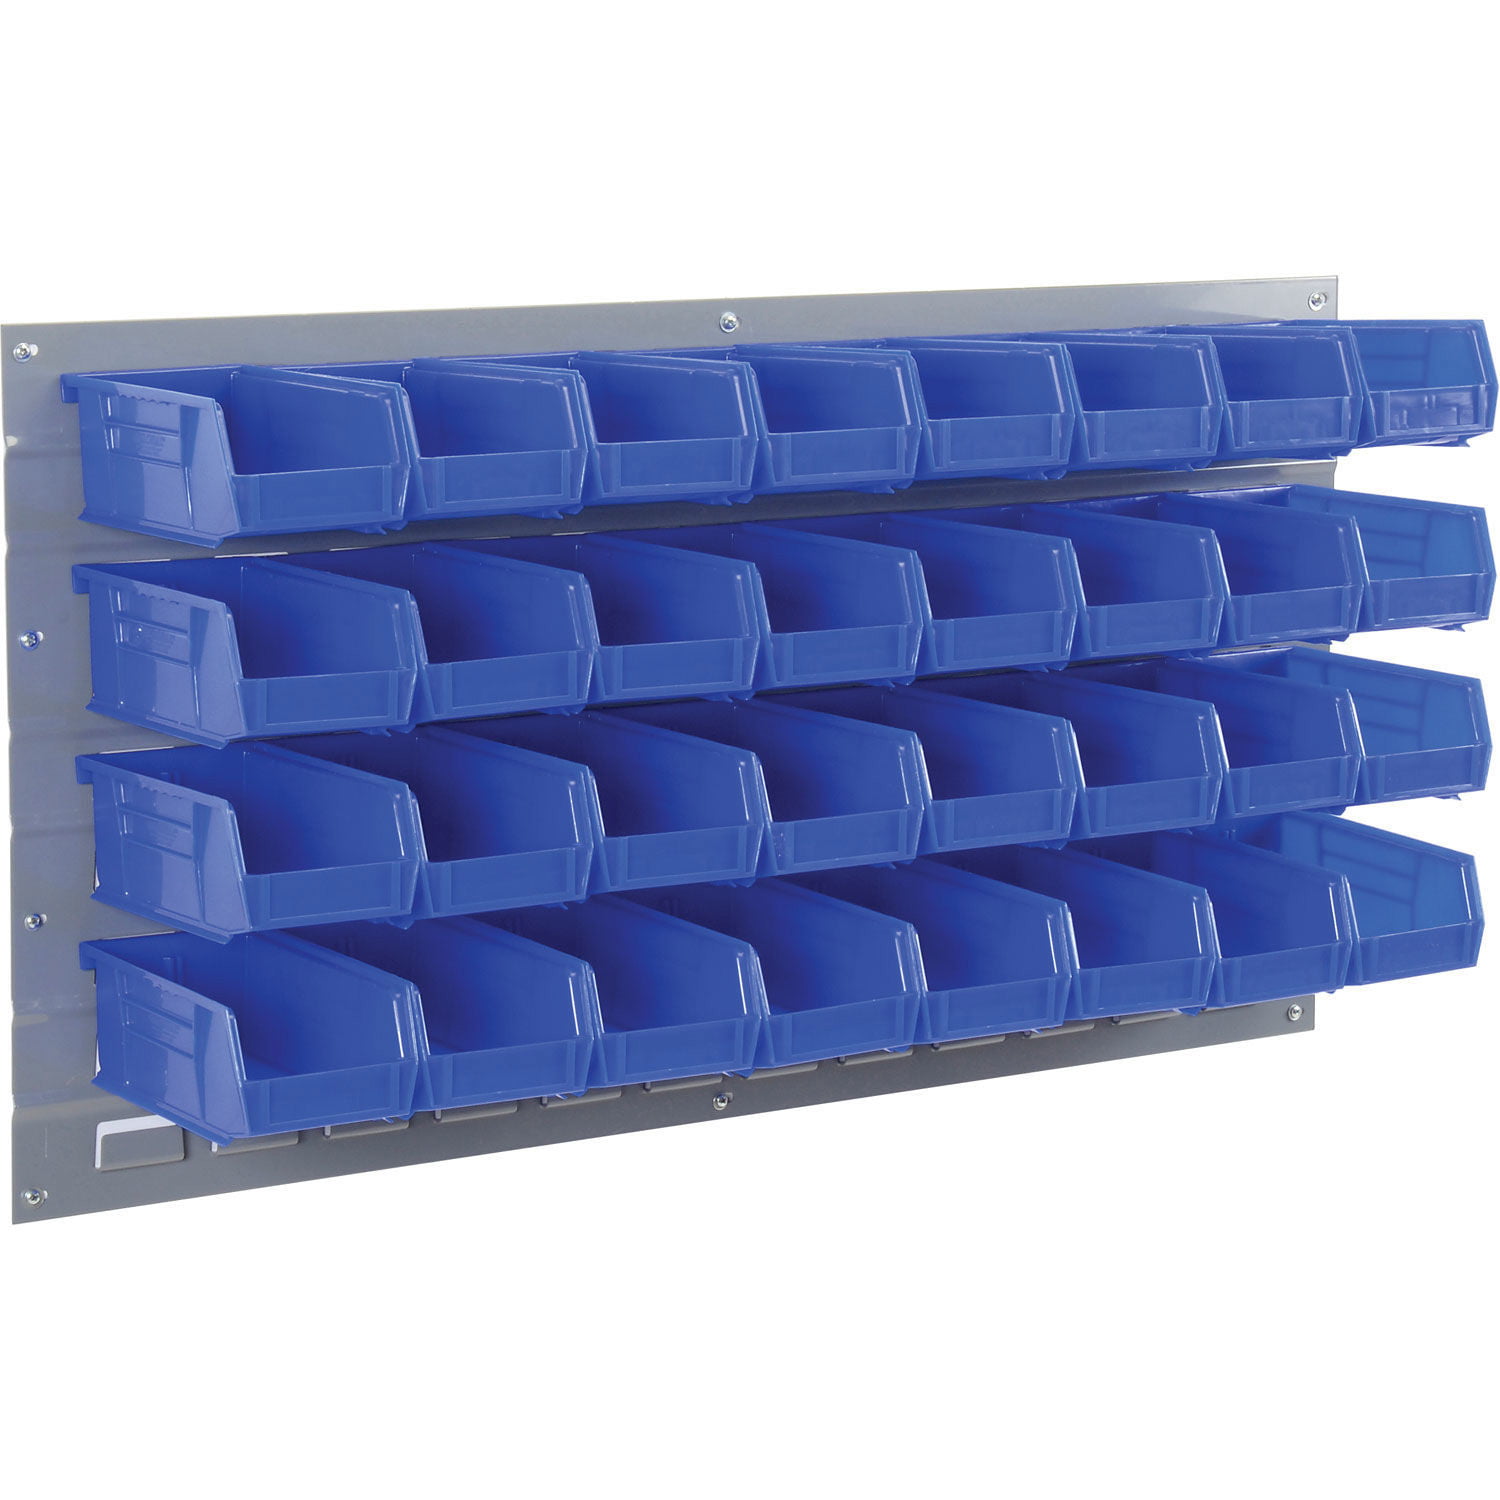 Shelf Bin Organizer - 36 x 12 x 39 with 4 x 12 x 4 Blue Bins H-2511BLU -  Uline